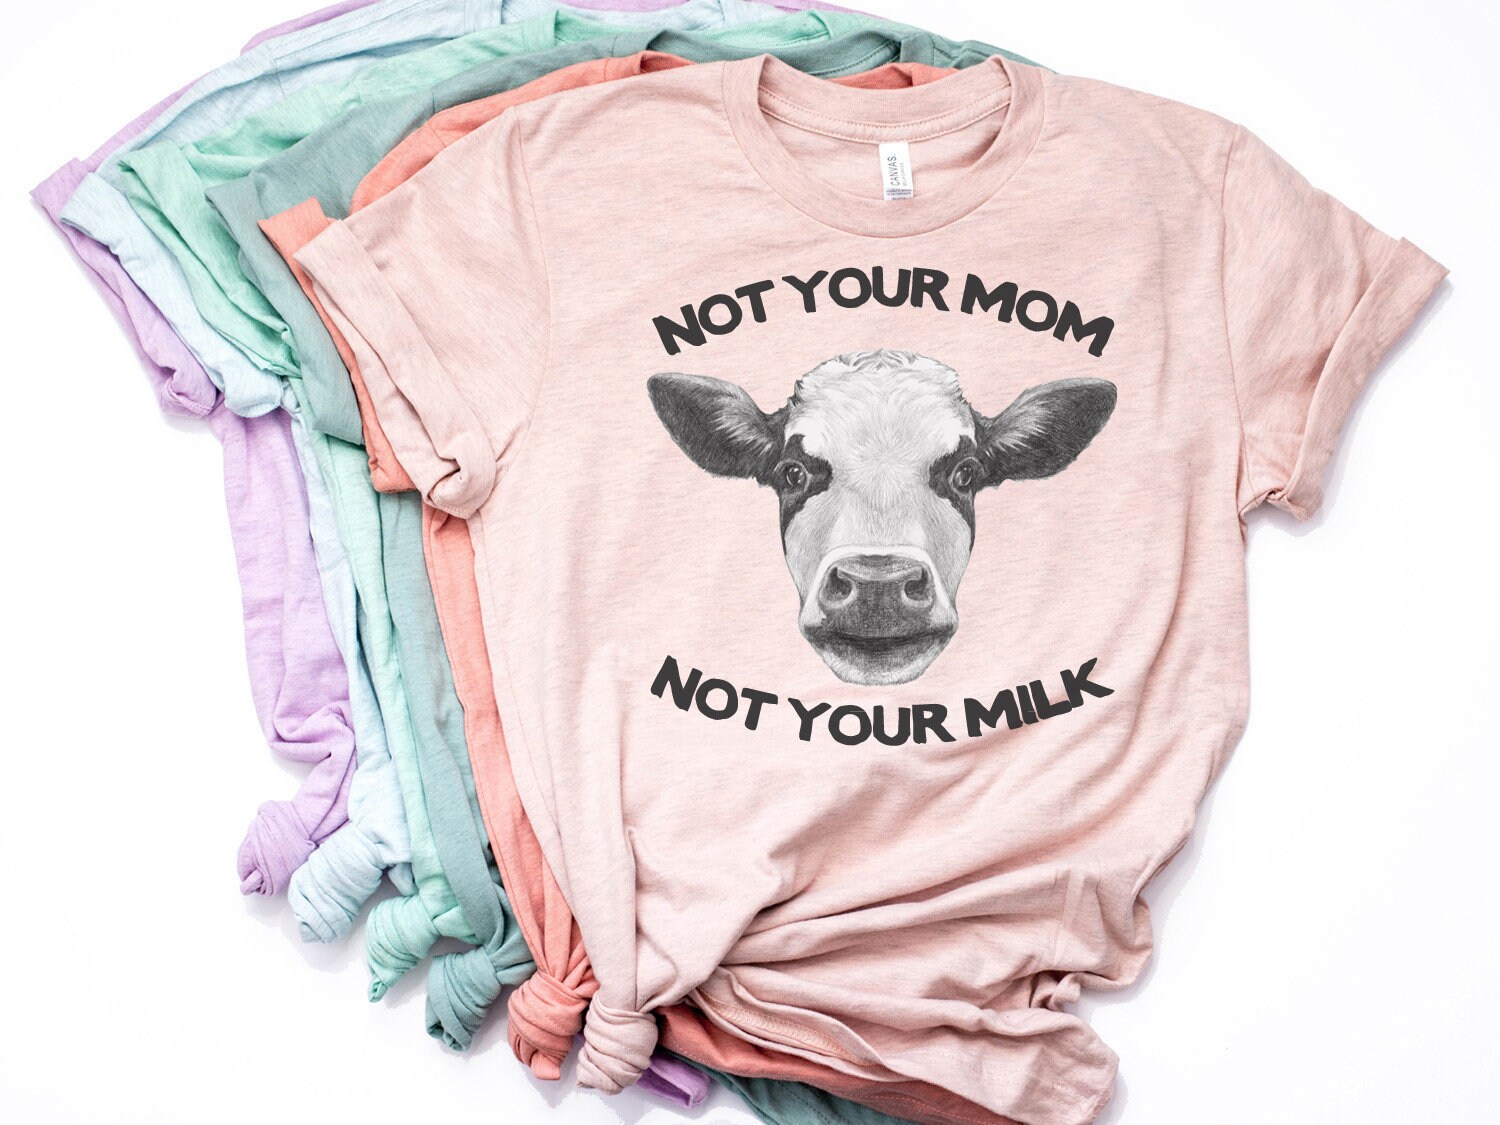 Vegan Shirt Vegan Birthday Gift Funny Vegan Vegetarian Gift Vegan Gift Not Your Mom Not Your Milk Shirt Vegan Gift For Women